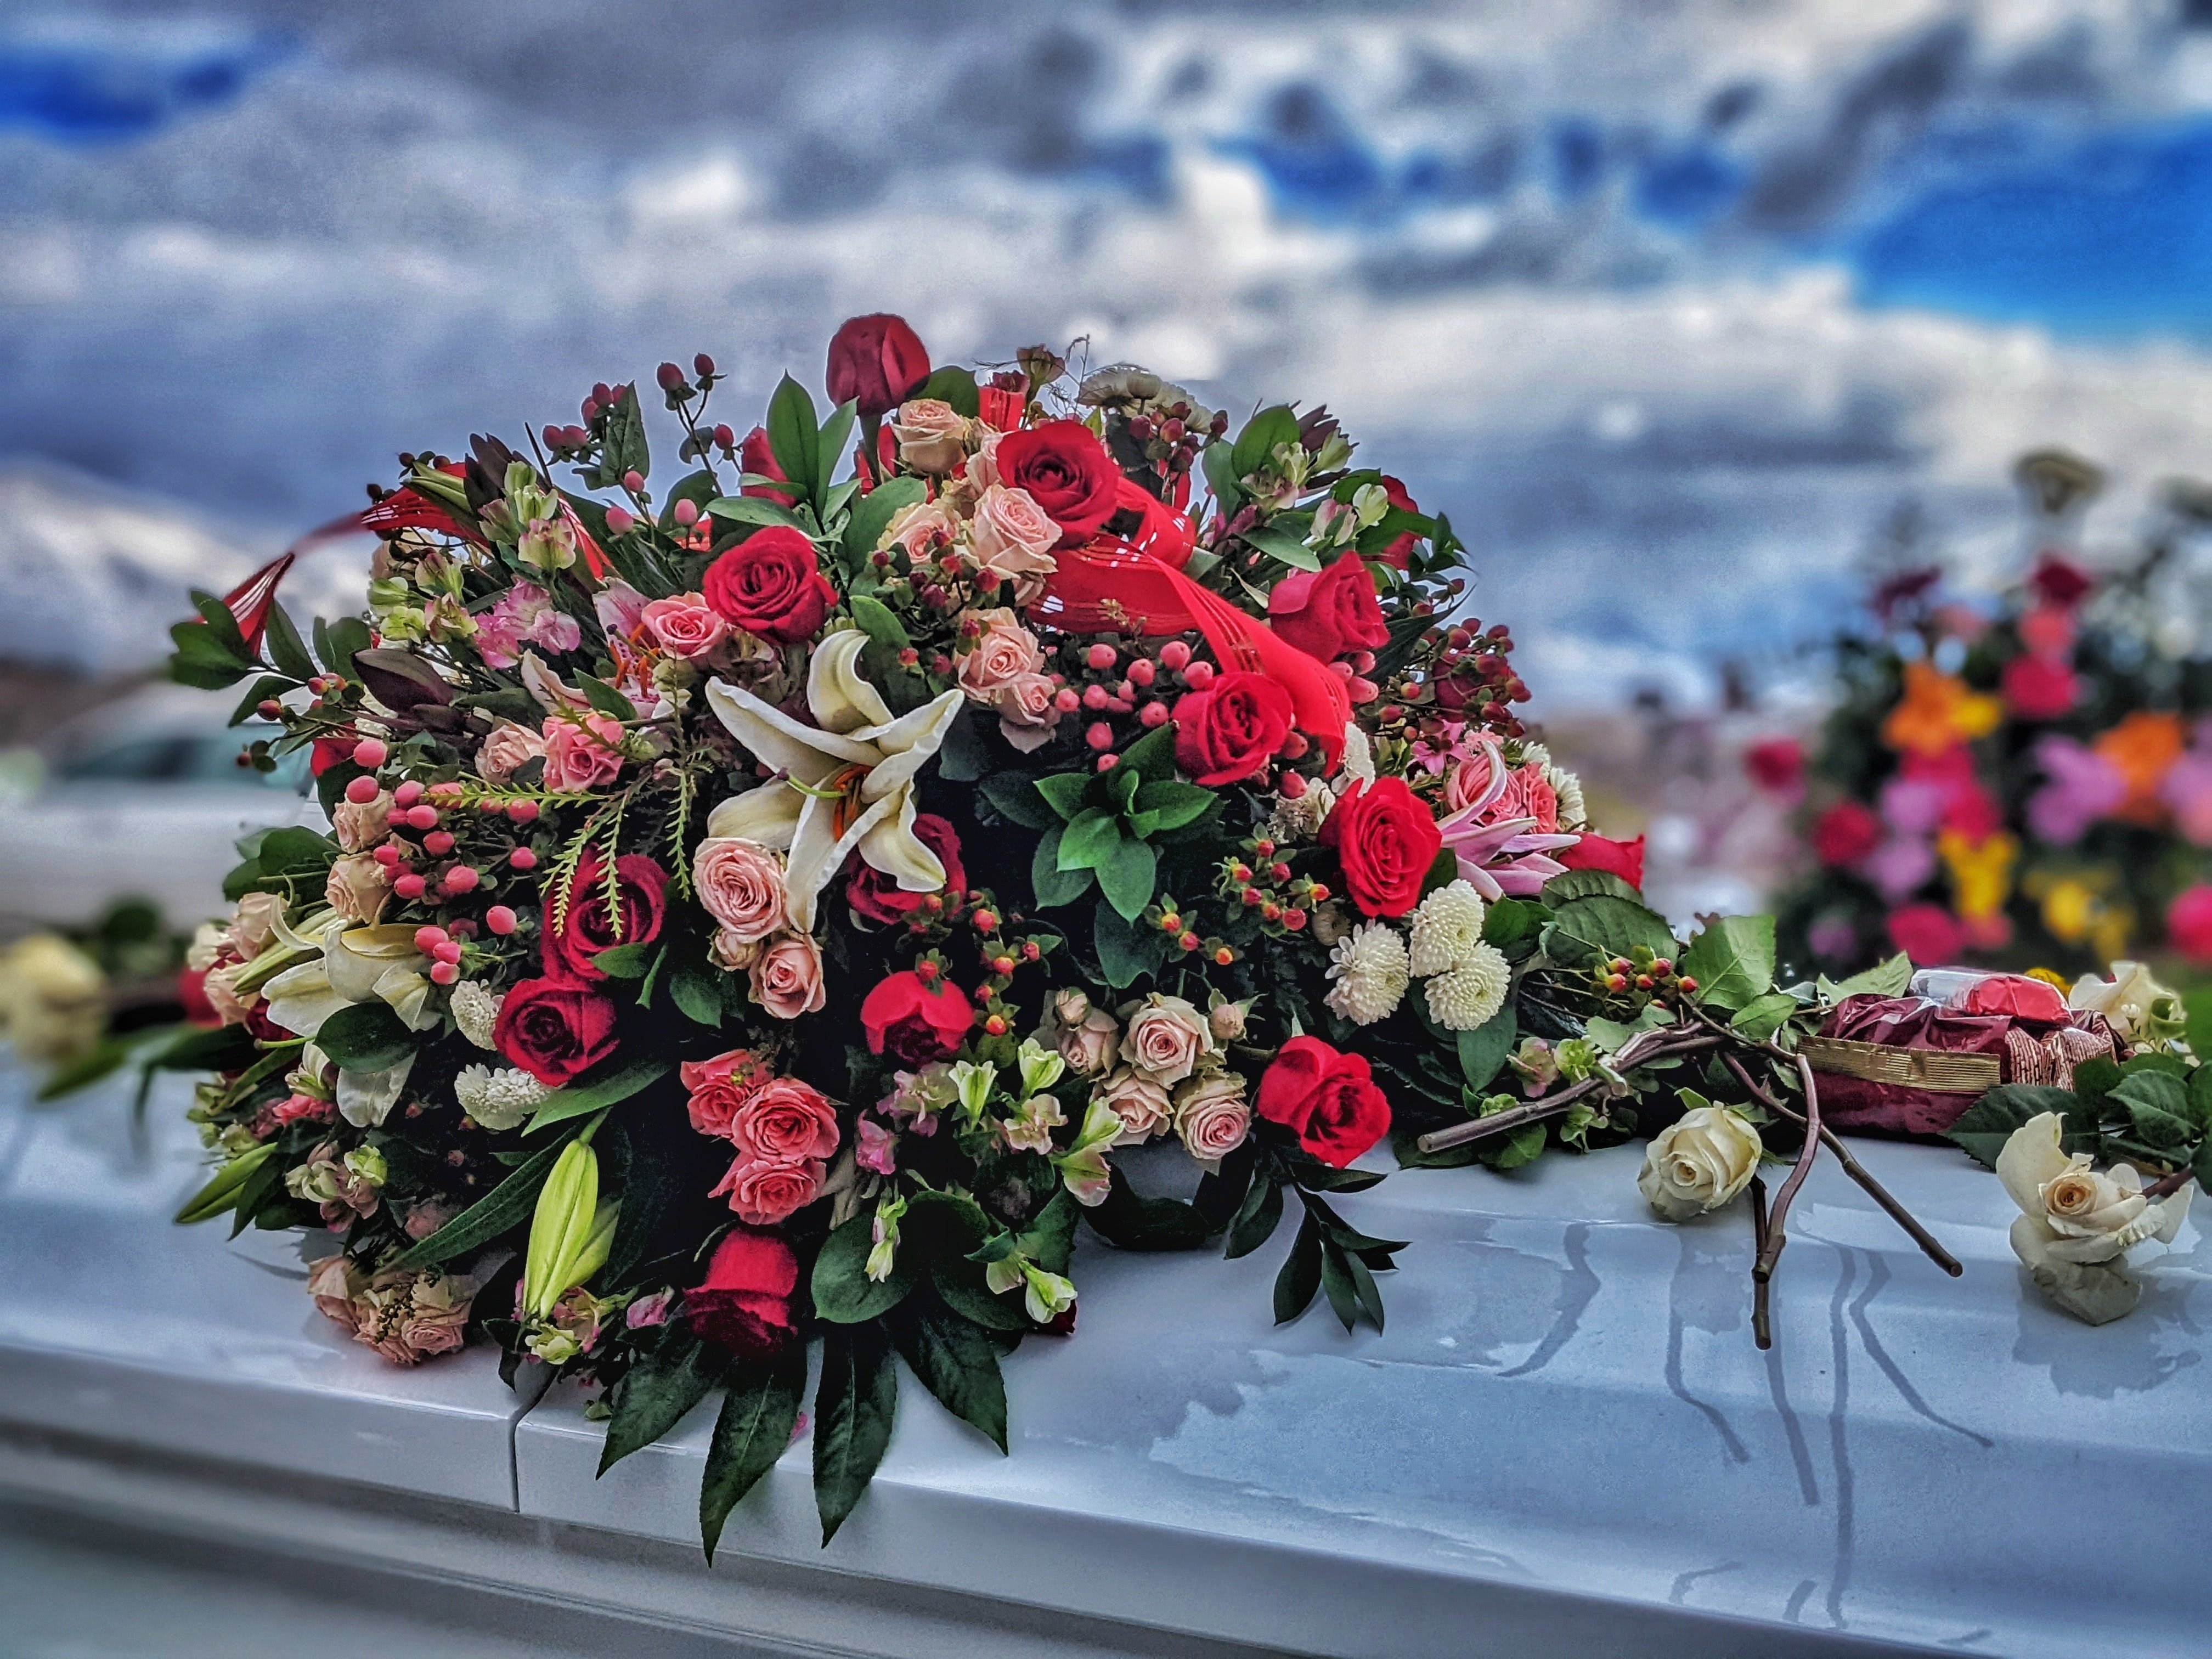 Sam und seine Familie legten Blumen auf das Grab seiner Mutter. | Quelle: Unsplash